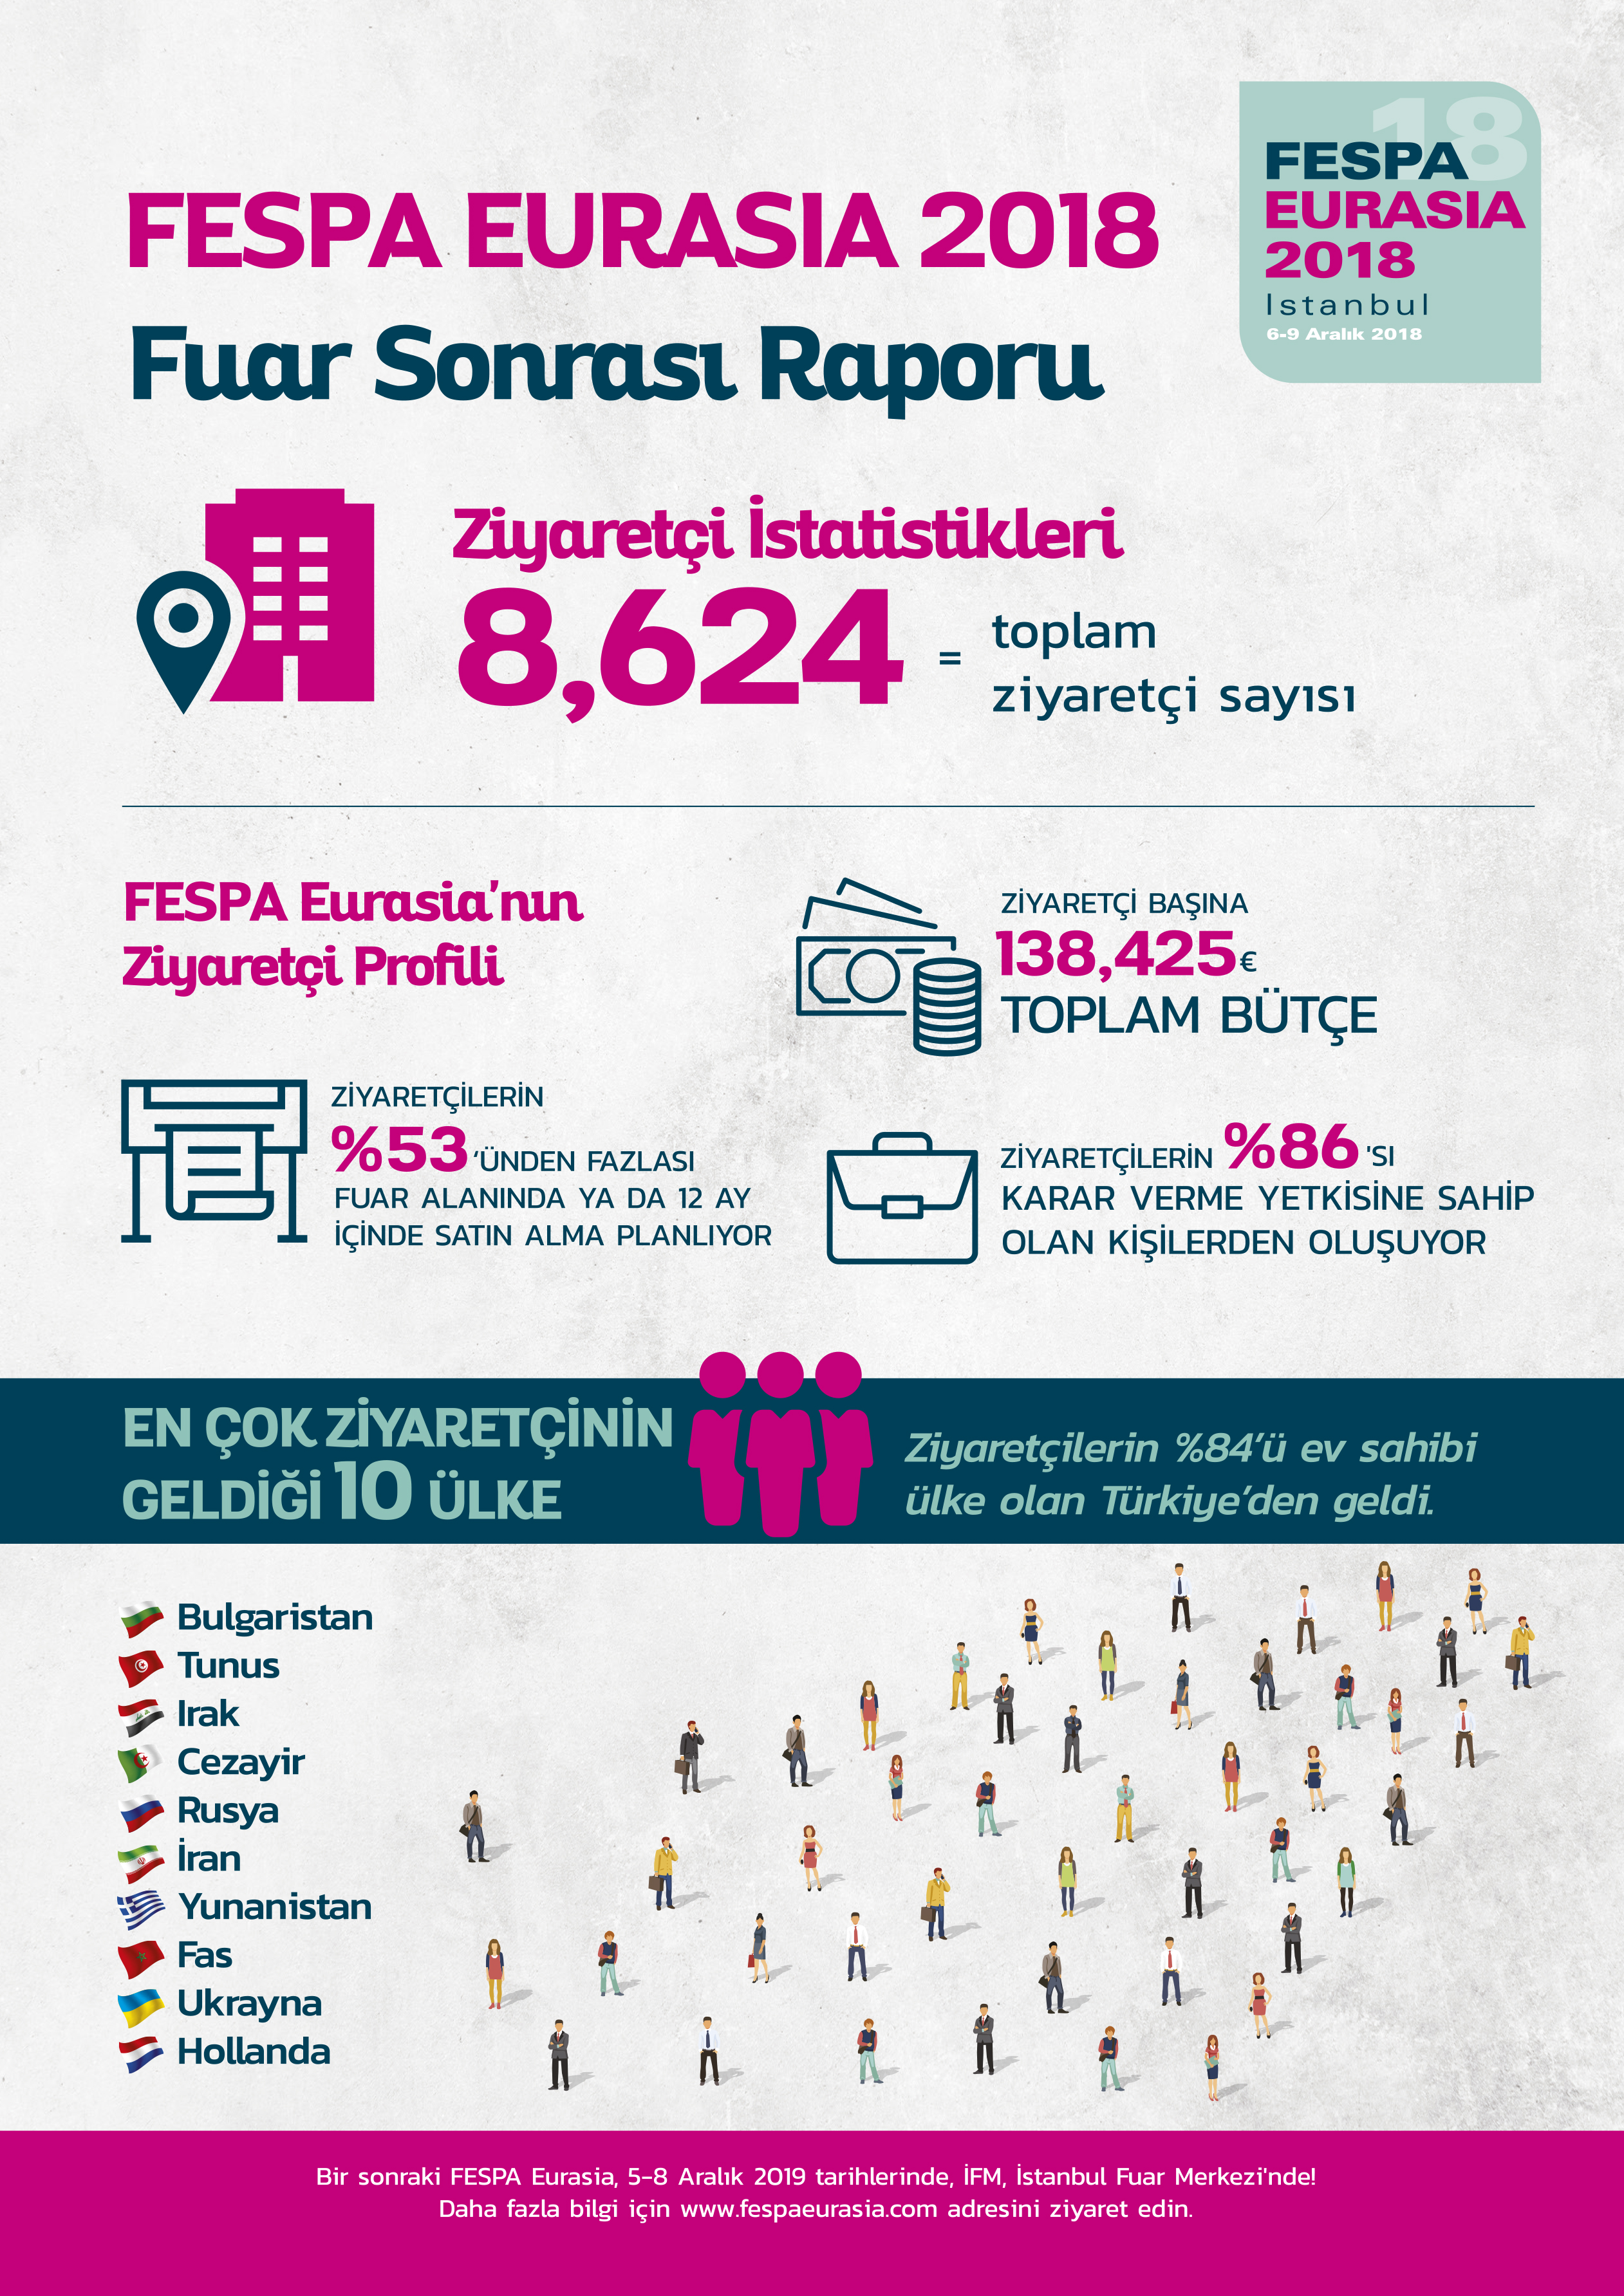 FESPA EURASIA 2018 Fuar Sonrası Raporu